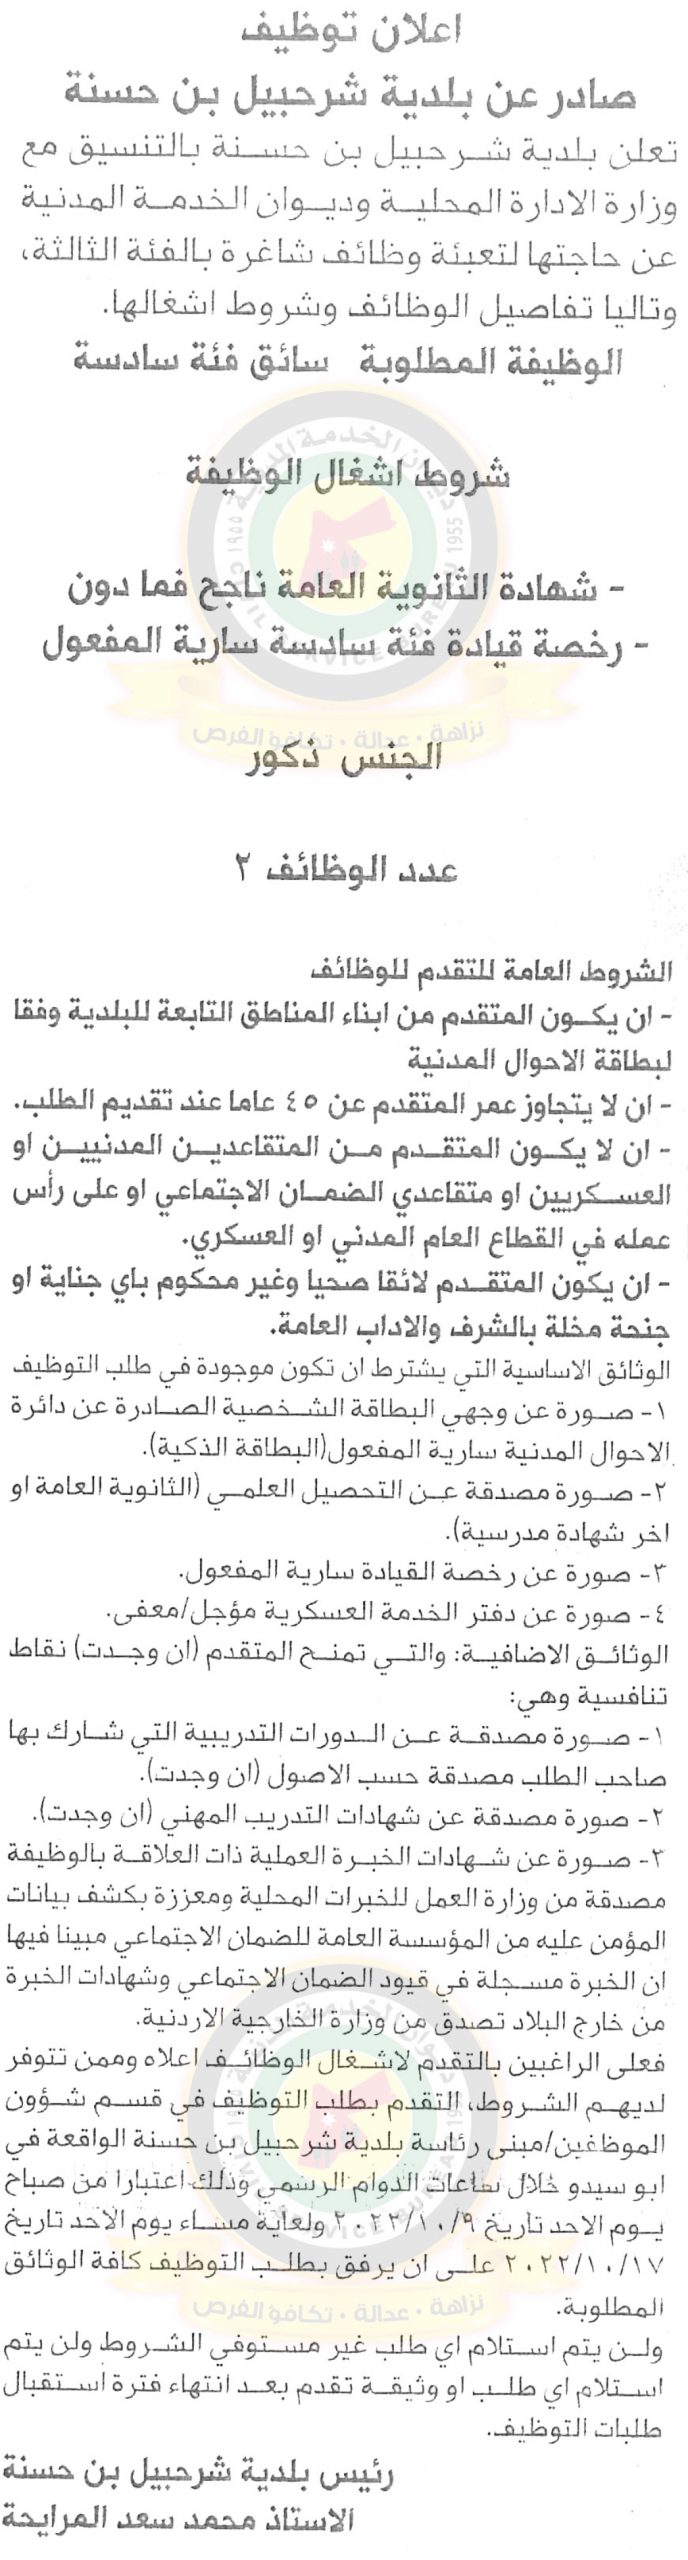 إعلان توظيف صادر عن بلدية شرحبيل بن حسنة